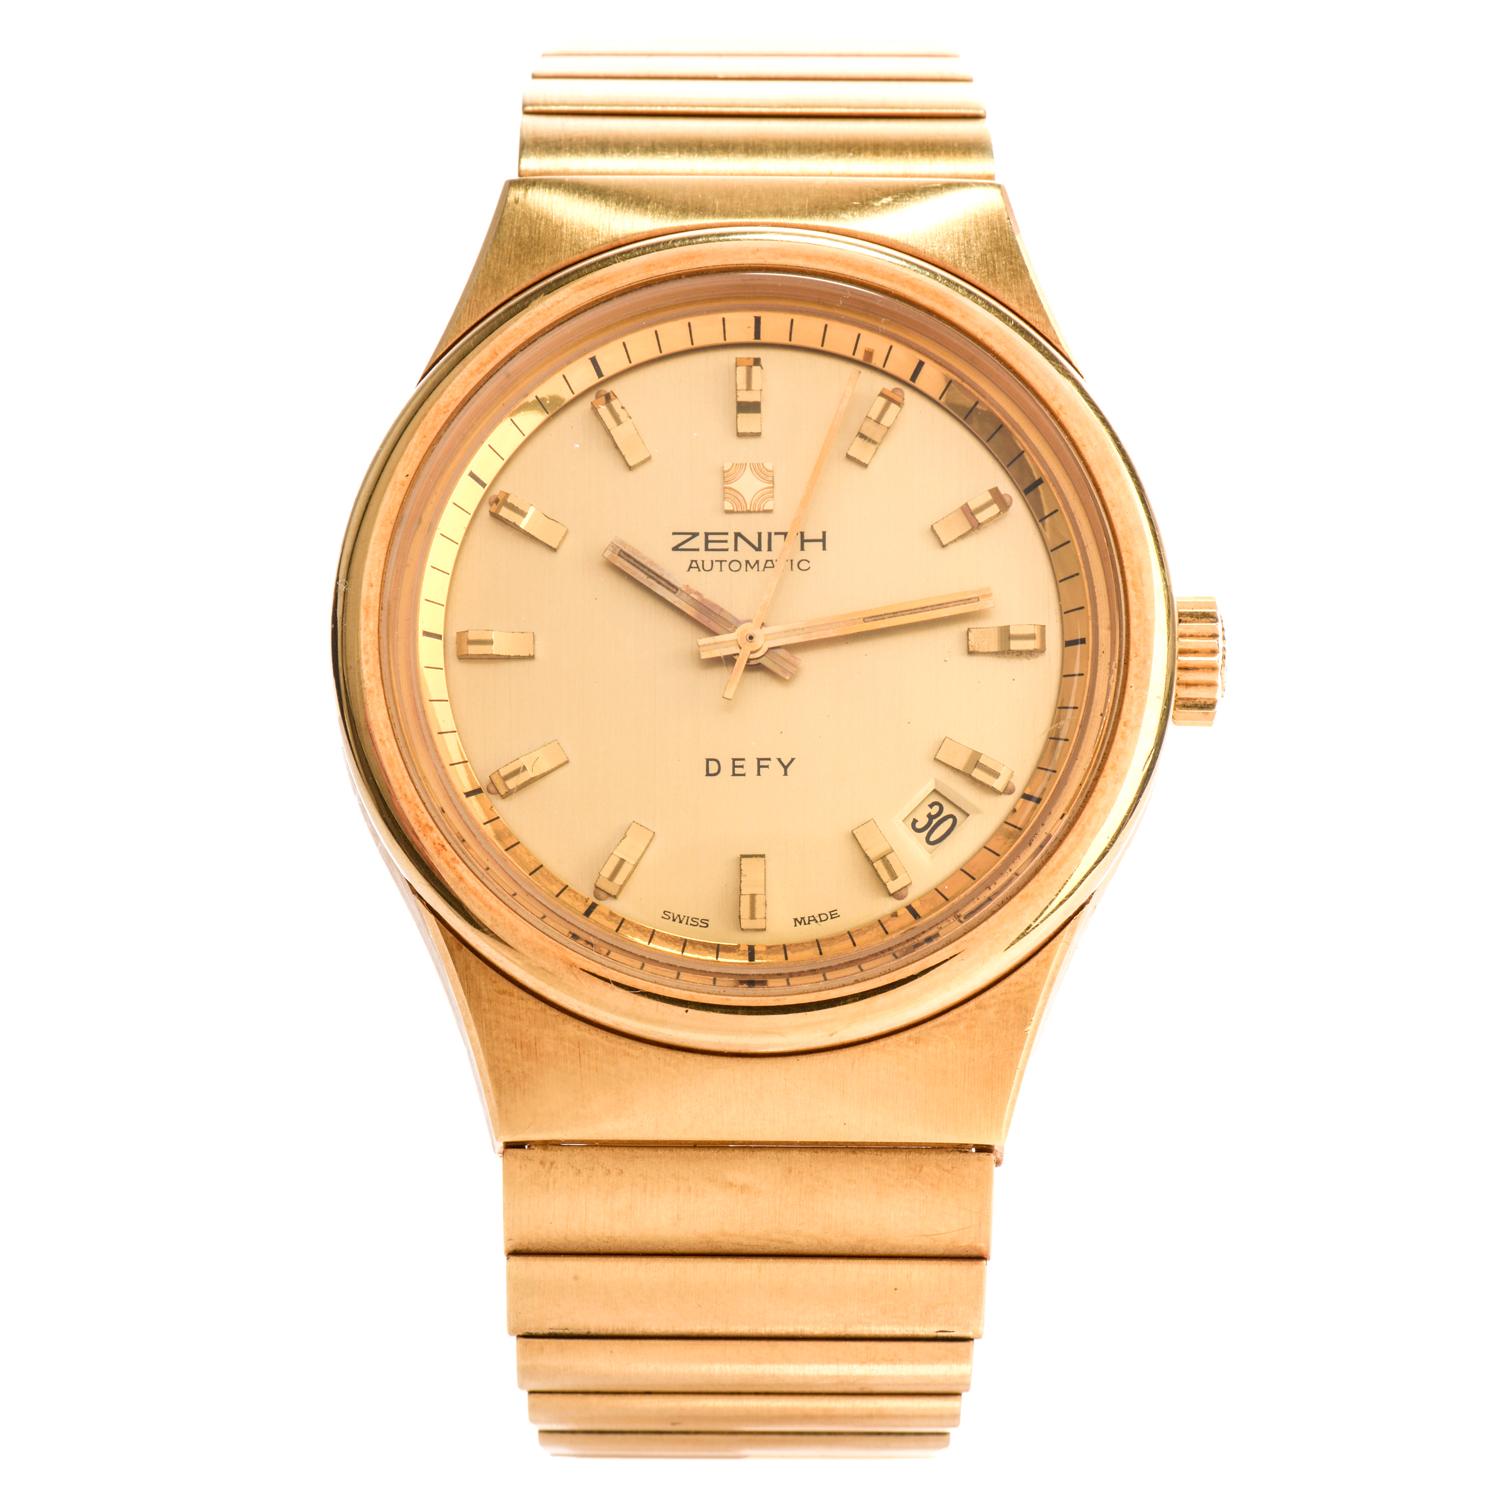 zenith gold watch price